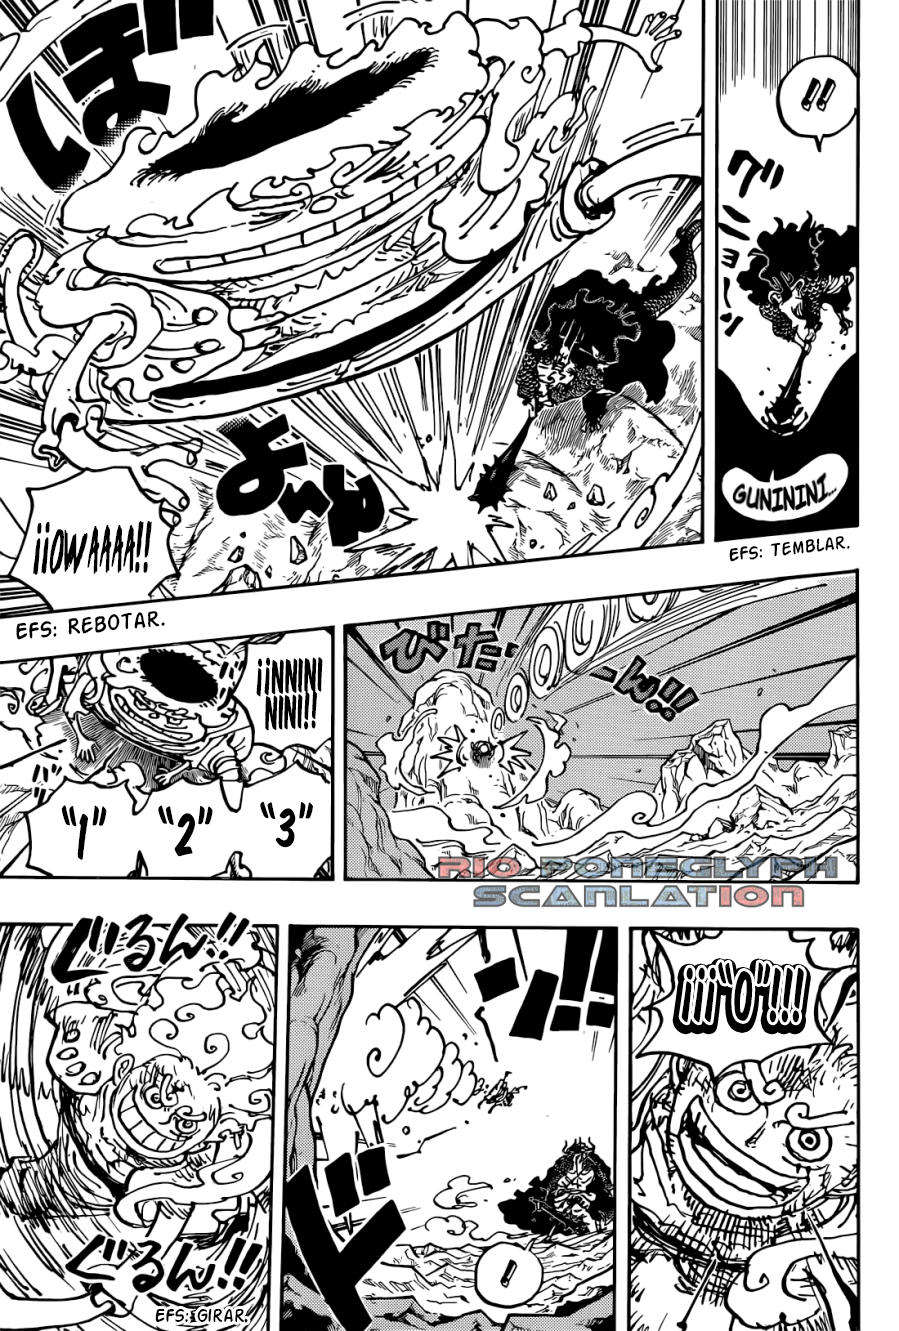 manga - One Piece Manga 1045 [Español] [Rio Poneglyph Scans] 3ZEYngXx_o